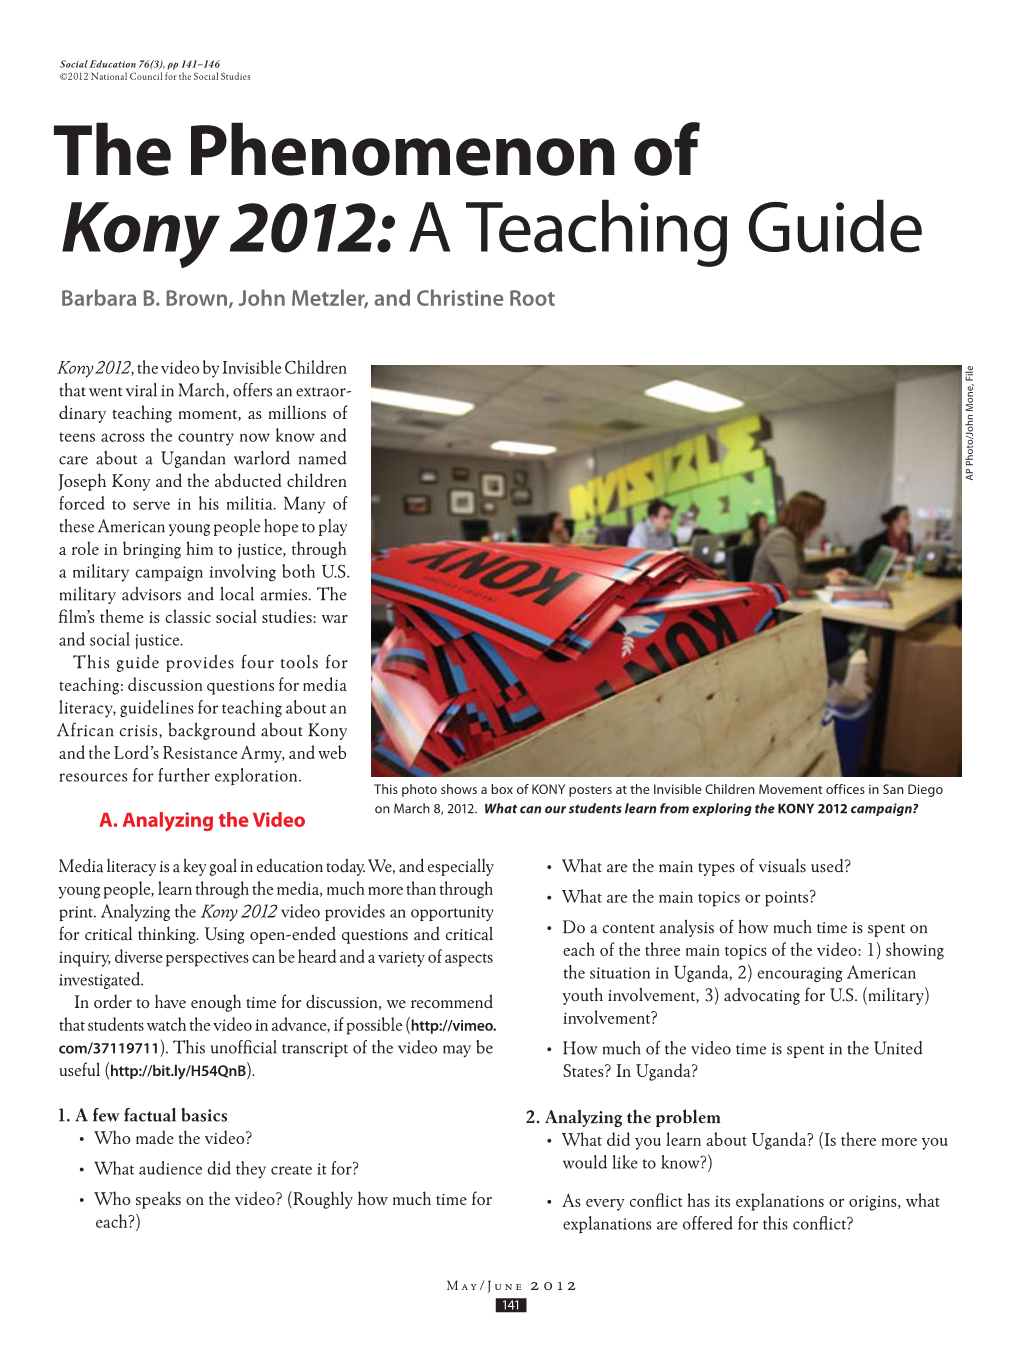 The Phenomenon of Kony 2012: a Teaching Guide Barbara B